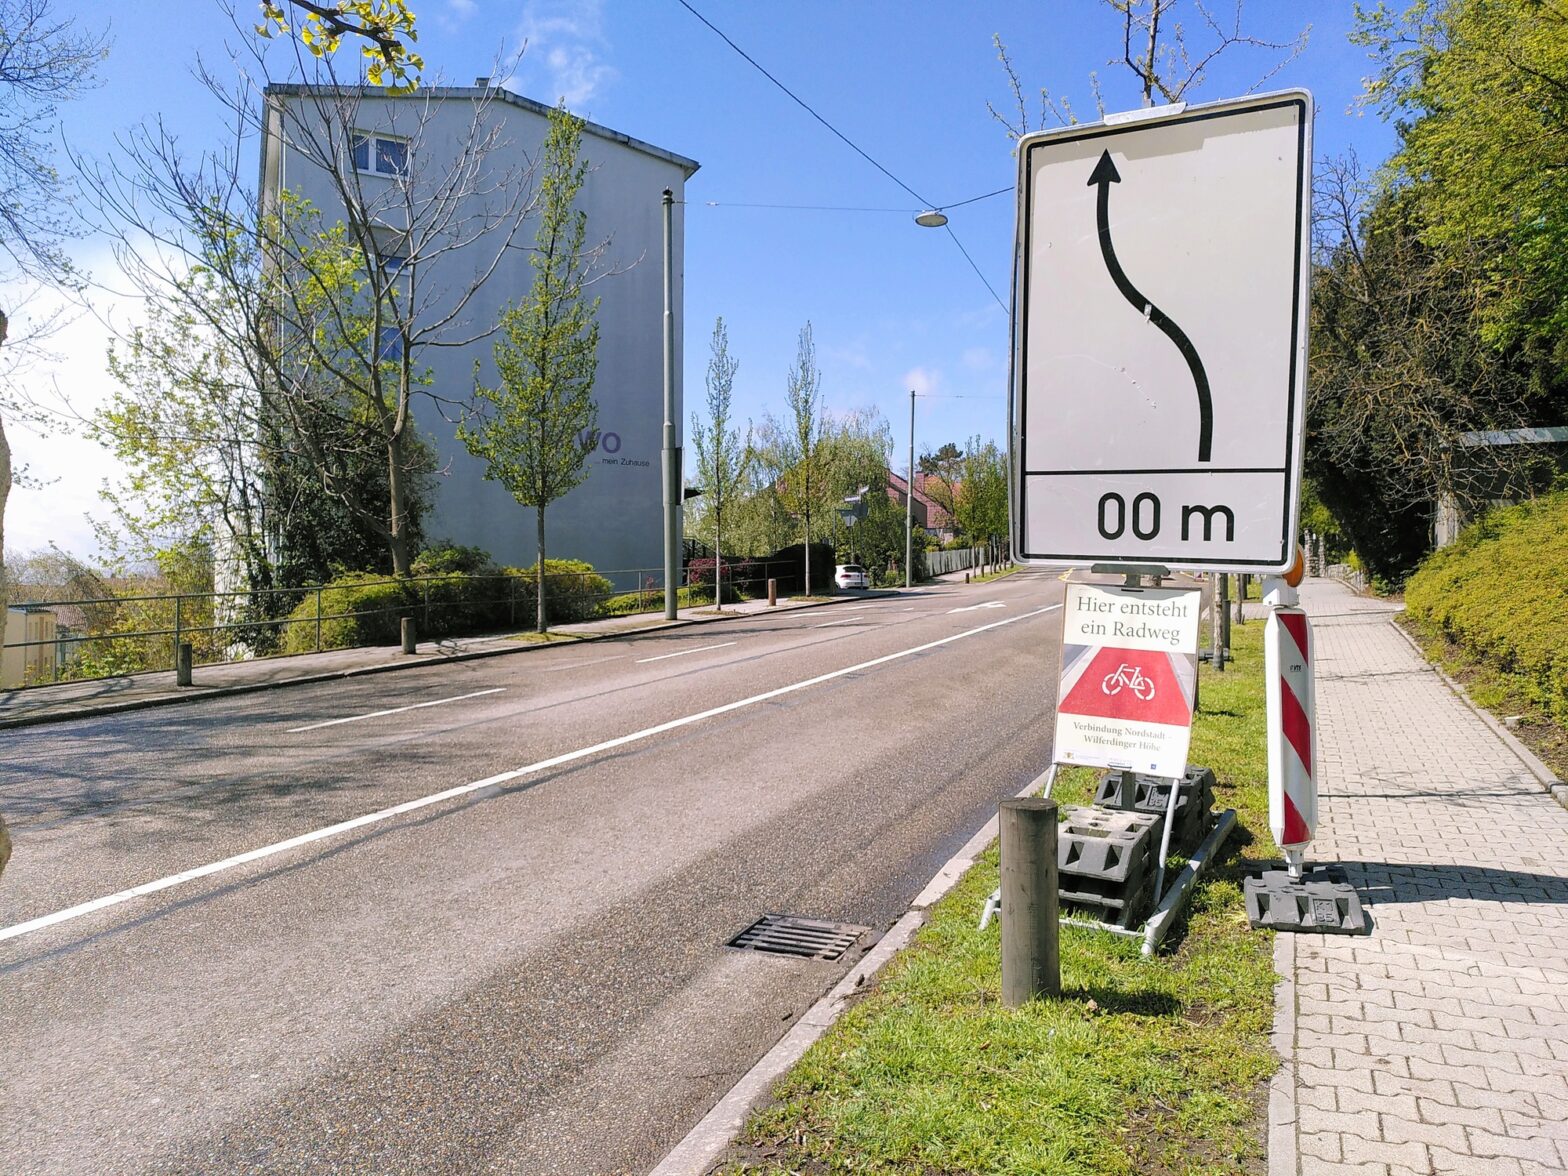 Angeblicher Radwegbau in Pforzheim – Leider nur ein Scherz vom 1. Mai – hängt aber immer noch